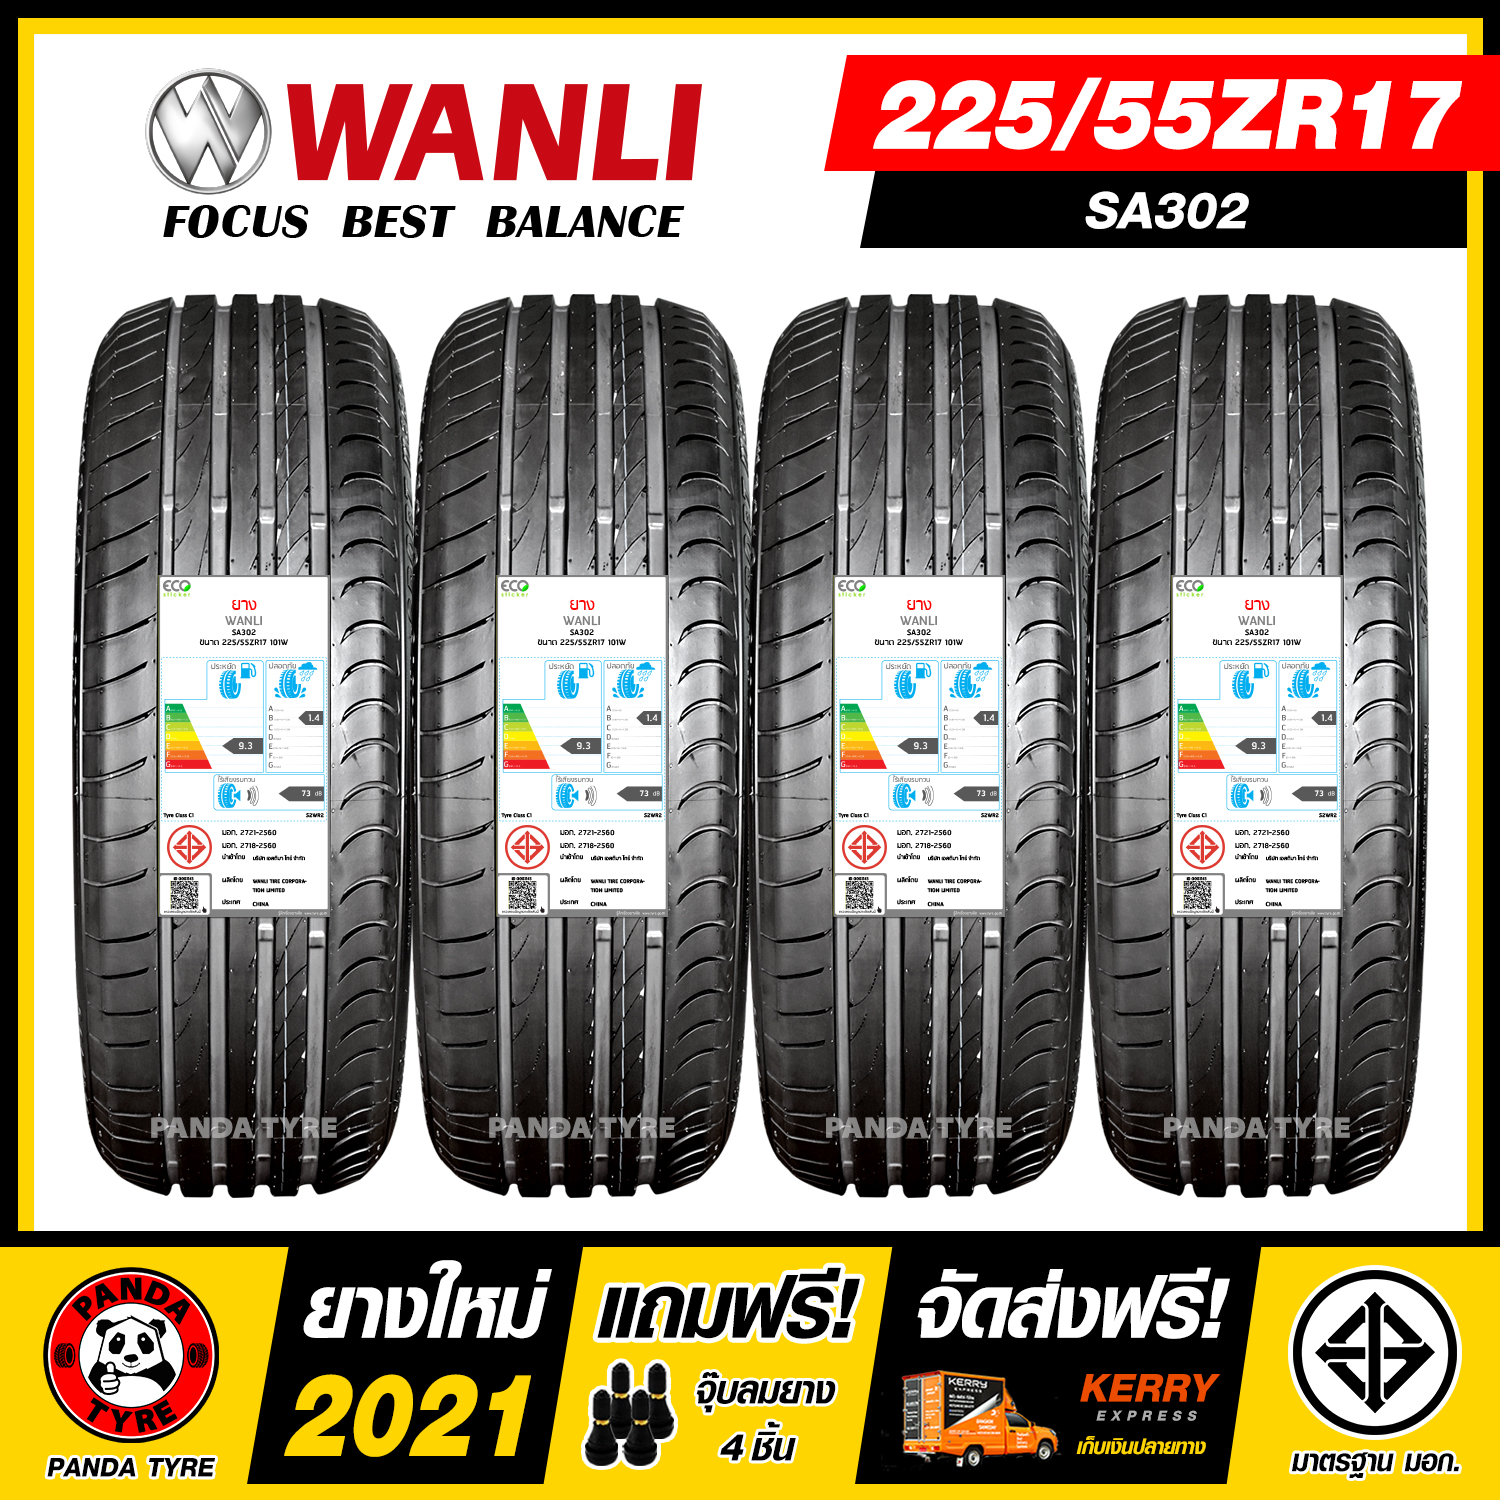 WANLI 225/55R17 ยางรถยนต์ขอบ17 รุ่น SA302 - 4 เส้น (ยางใหม่ผลิตปี 2021)